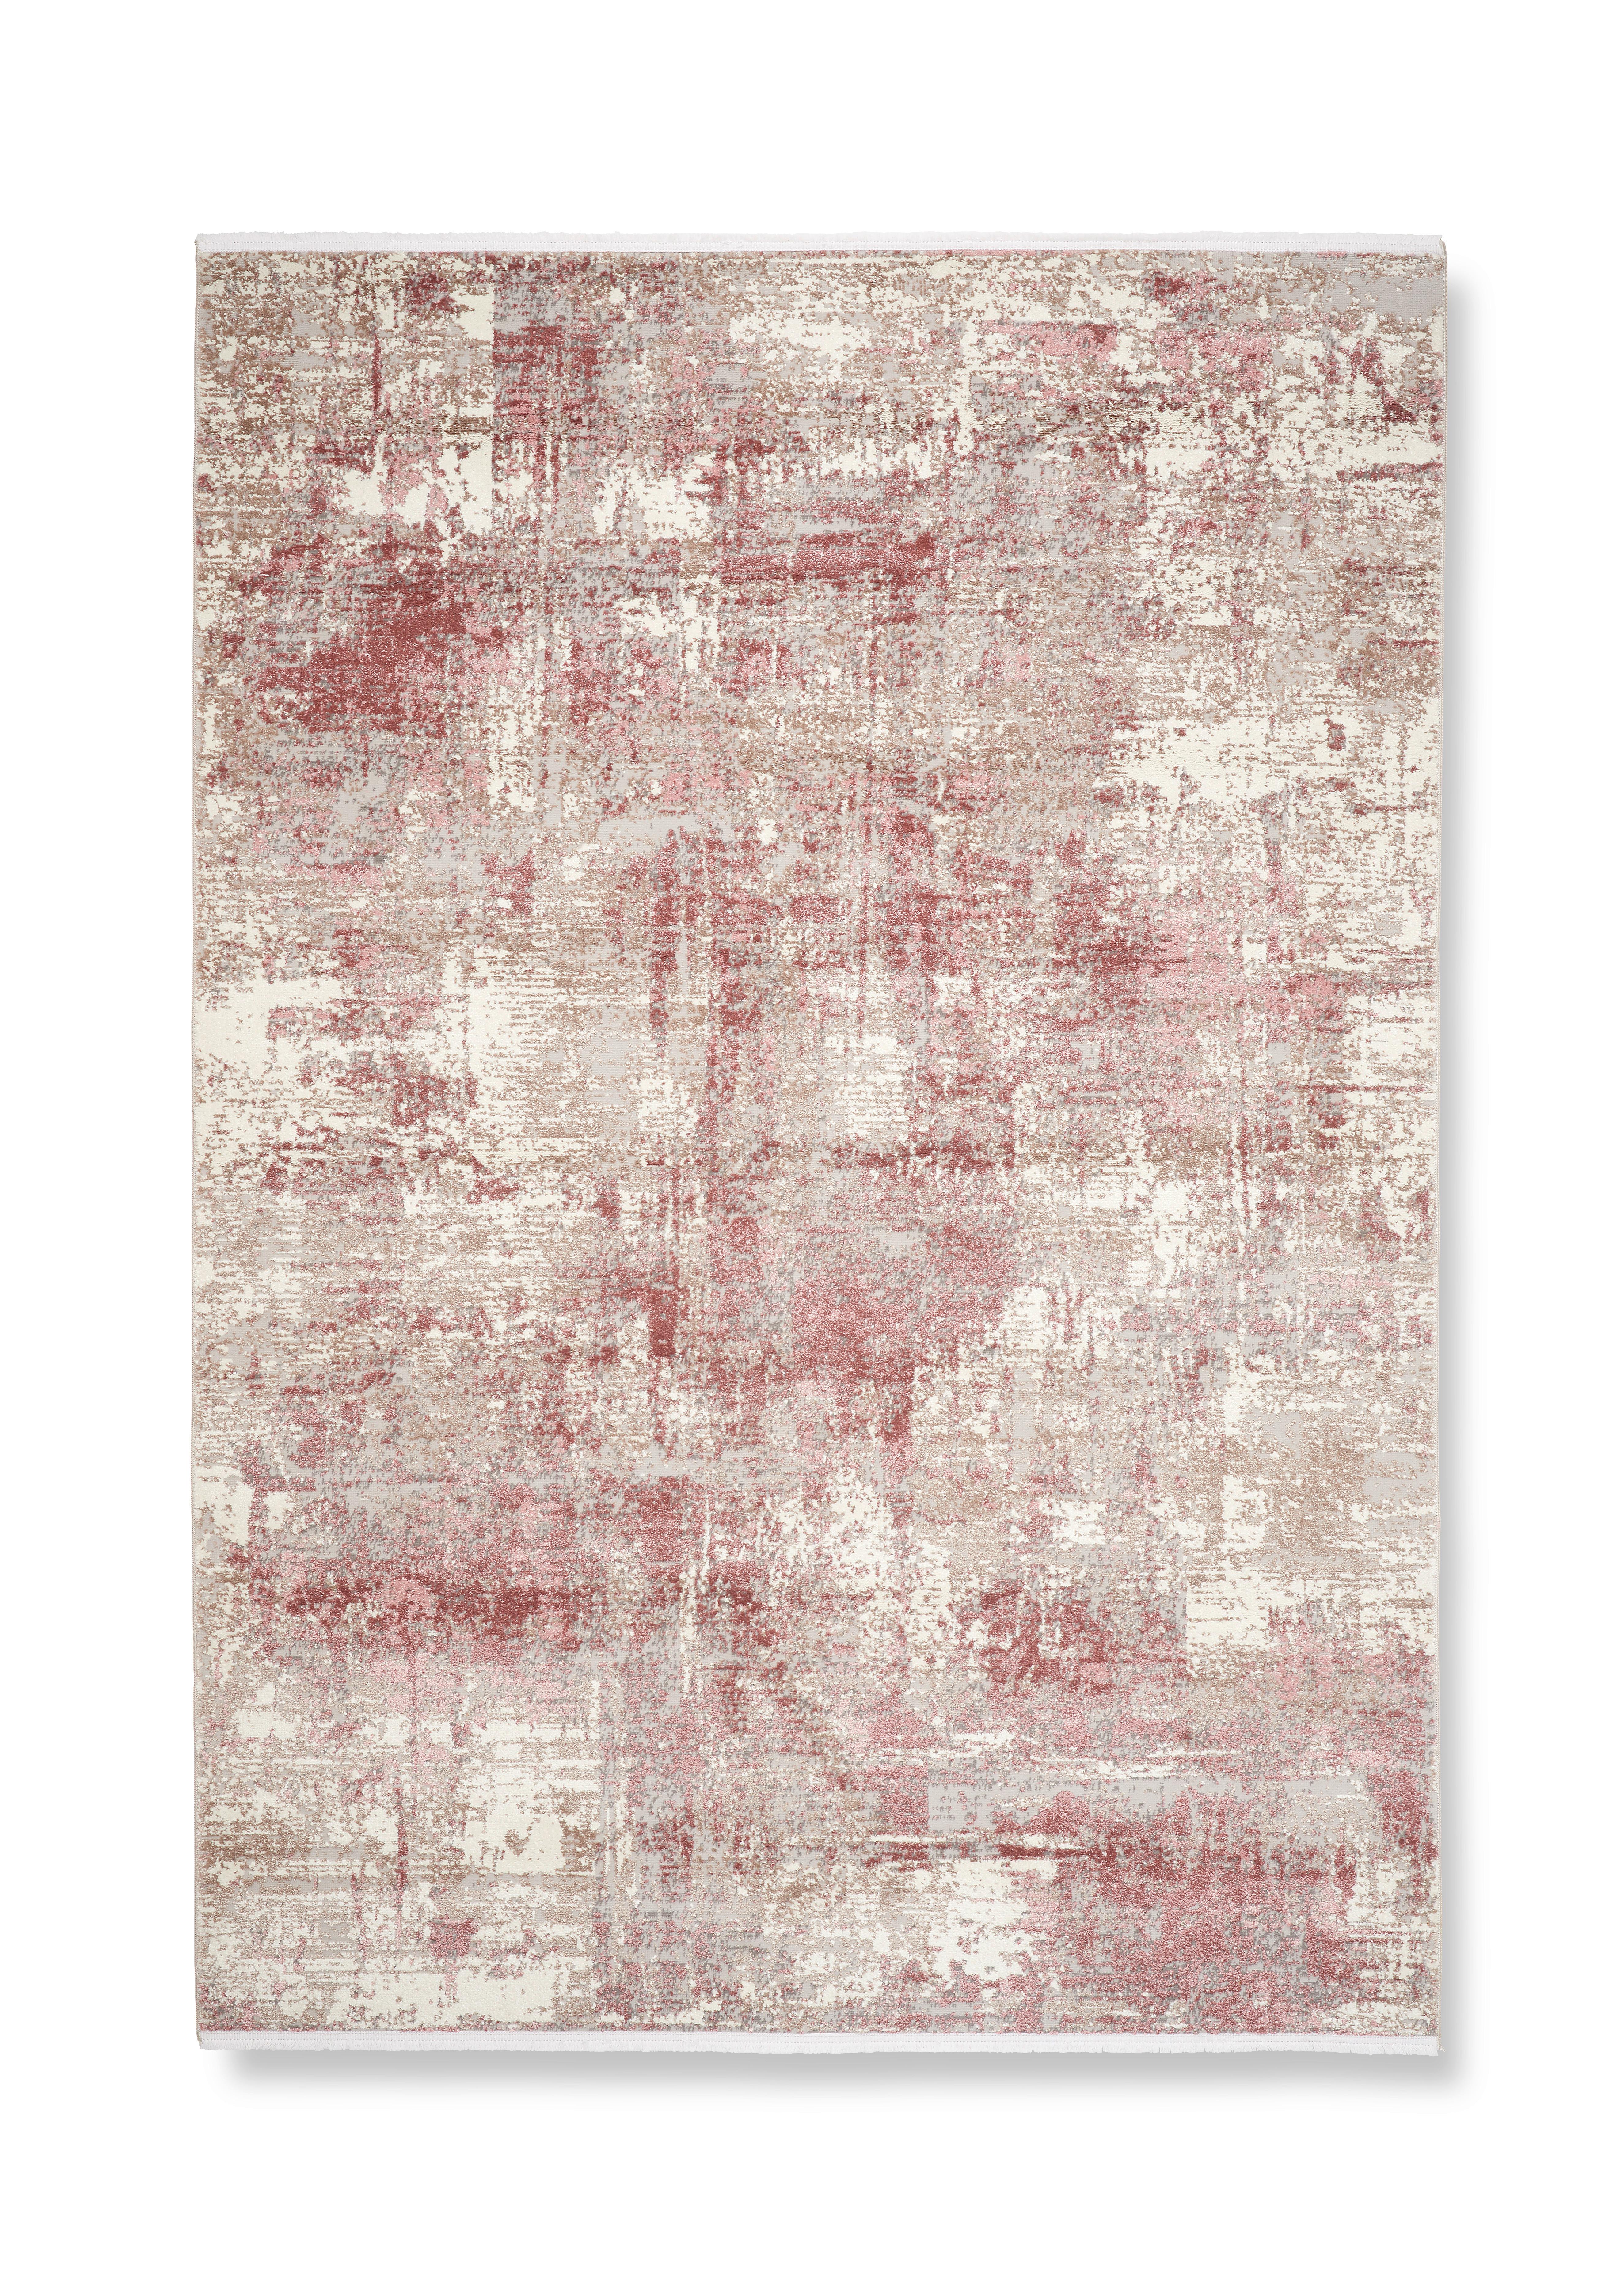 Tkaný Koberec Malik 3, 160/230cm - pink/krémová, Moderní, textil (160/230cm) - Modern Living